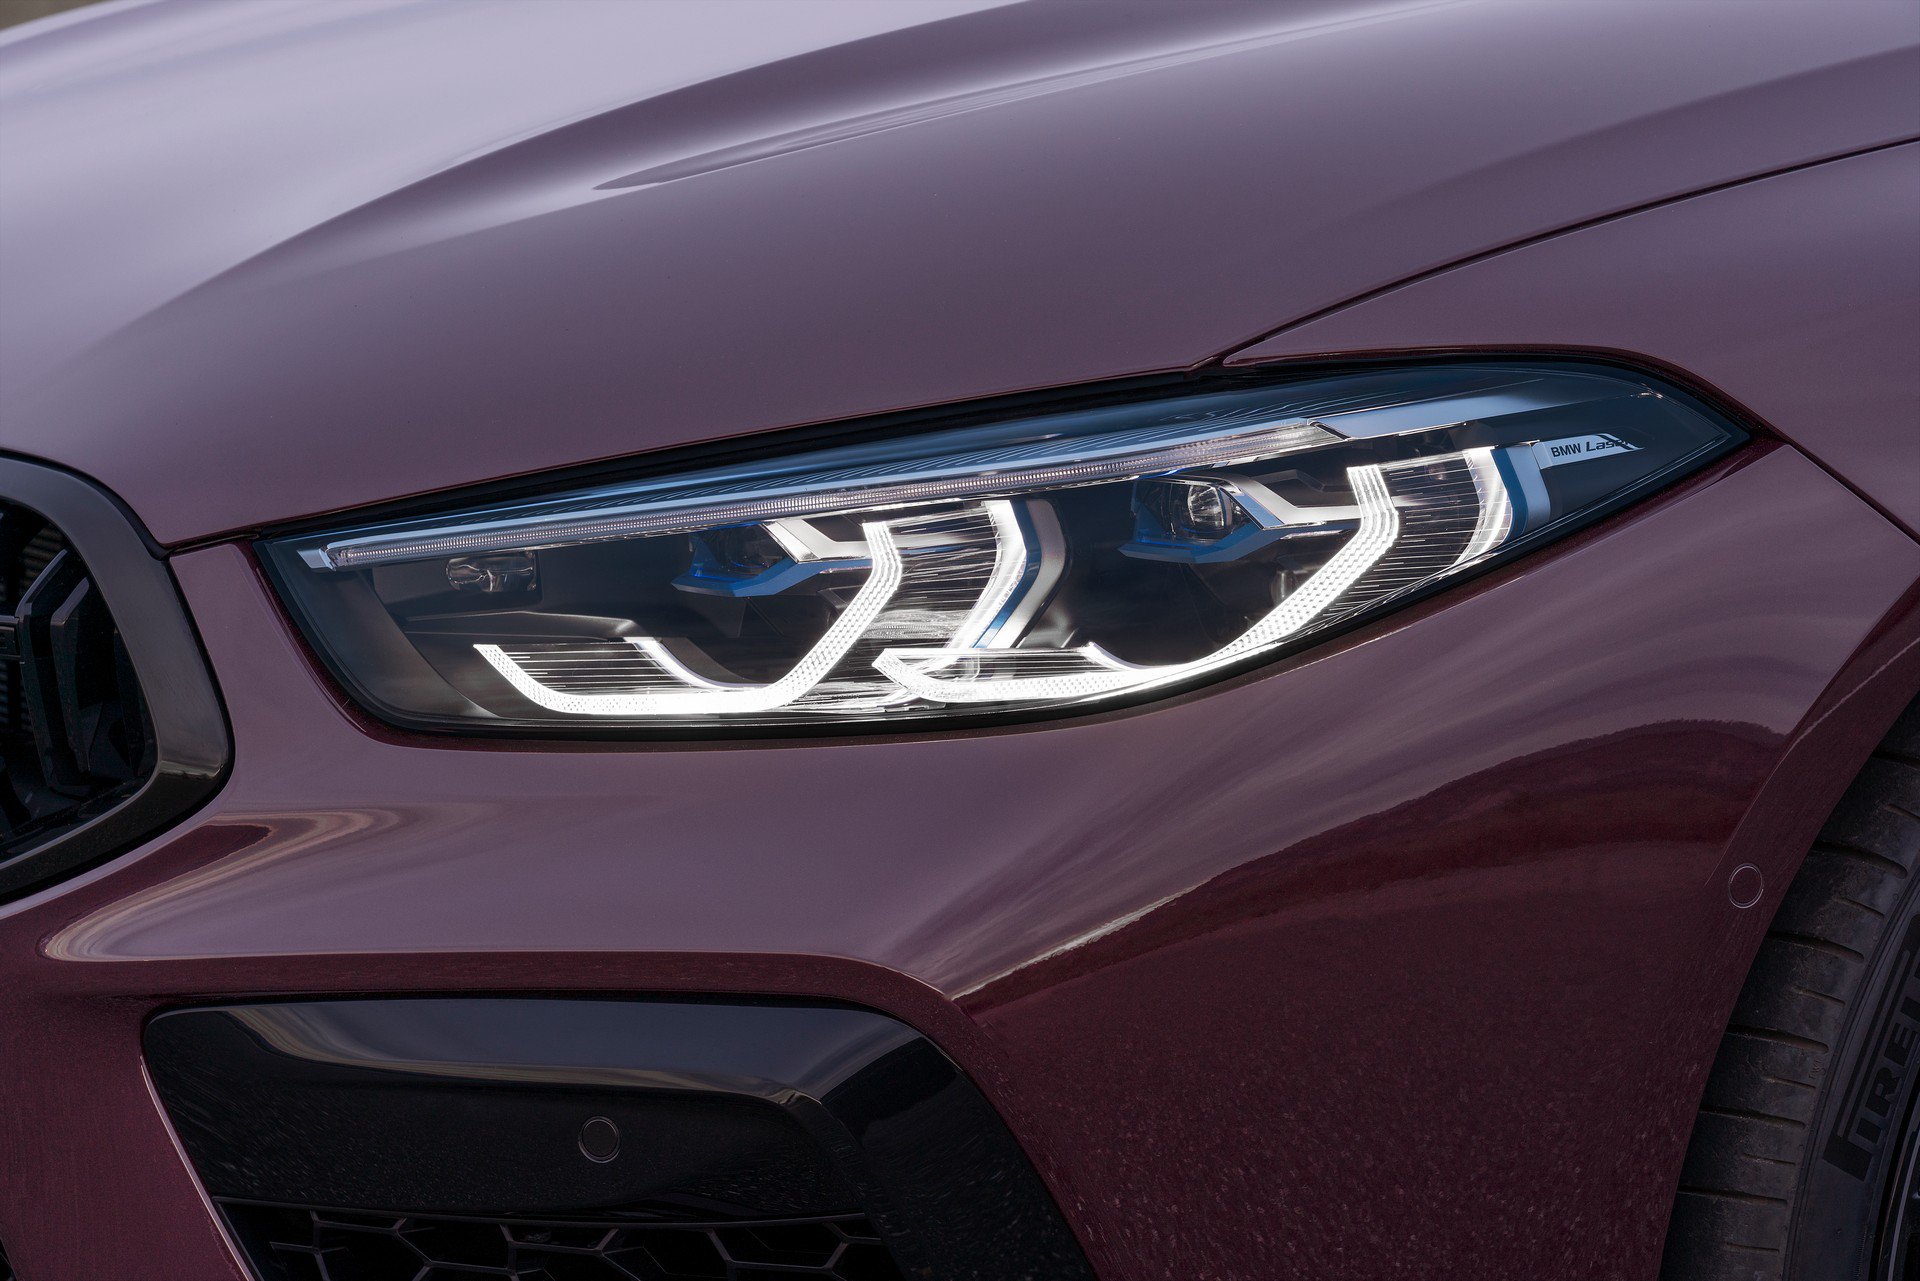 2020 BMW M8 Gran Coupe tanıtıldı: 600 beygirlik dört kapılı coupe